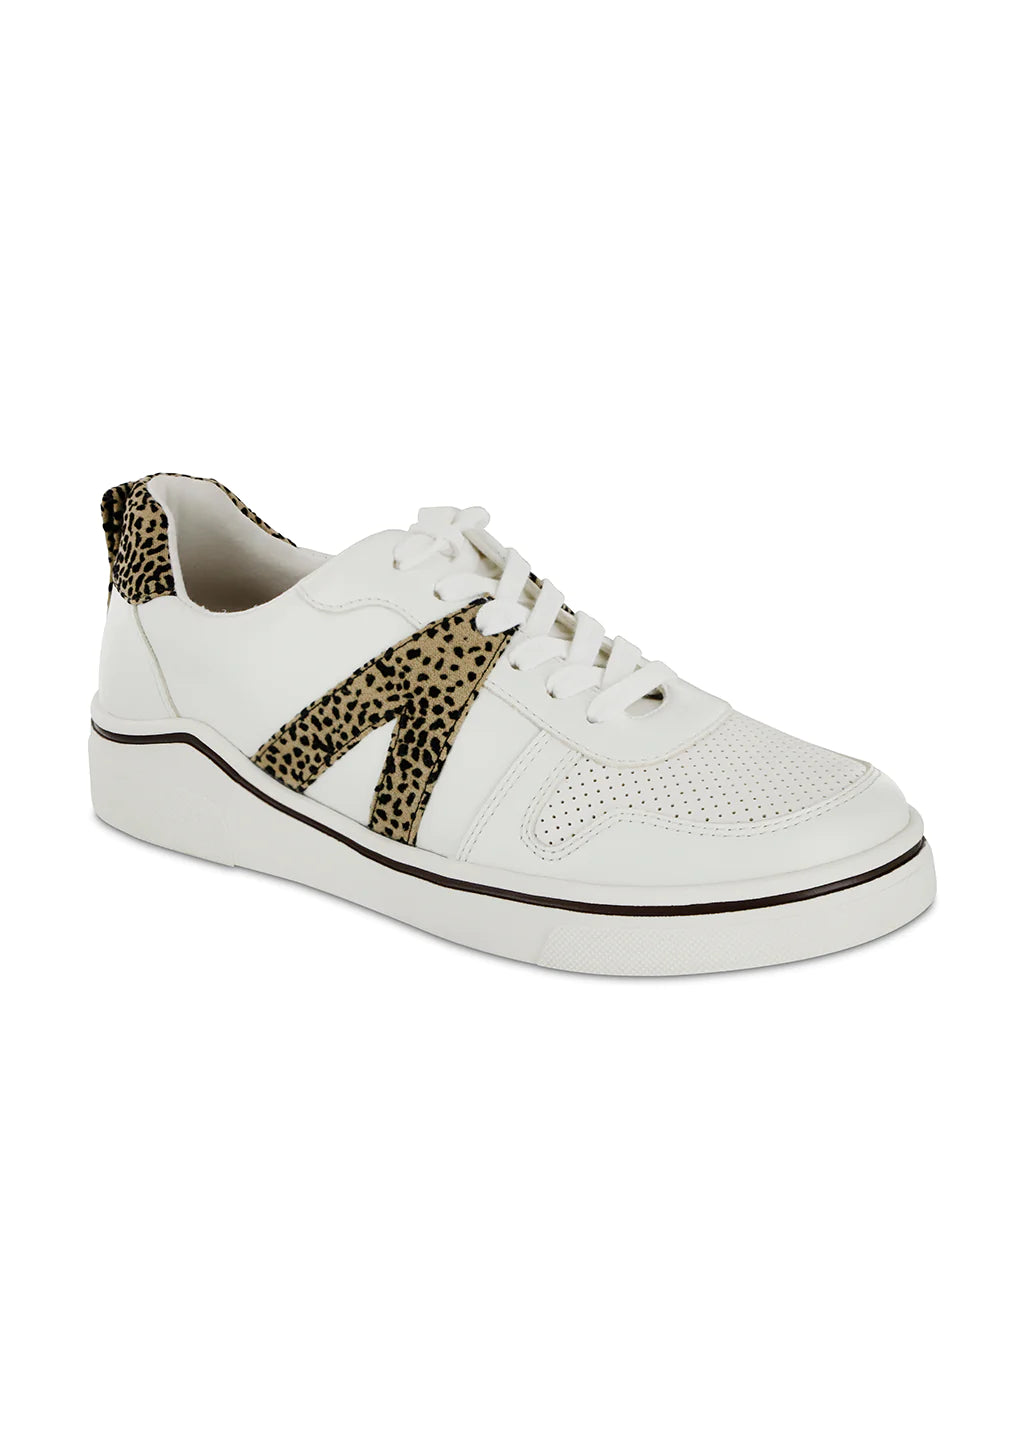 MIA Shoes | Alta - White Cheeta (Final Sale)